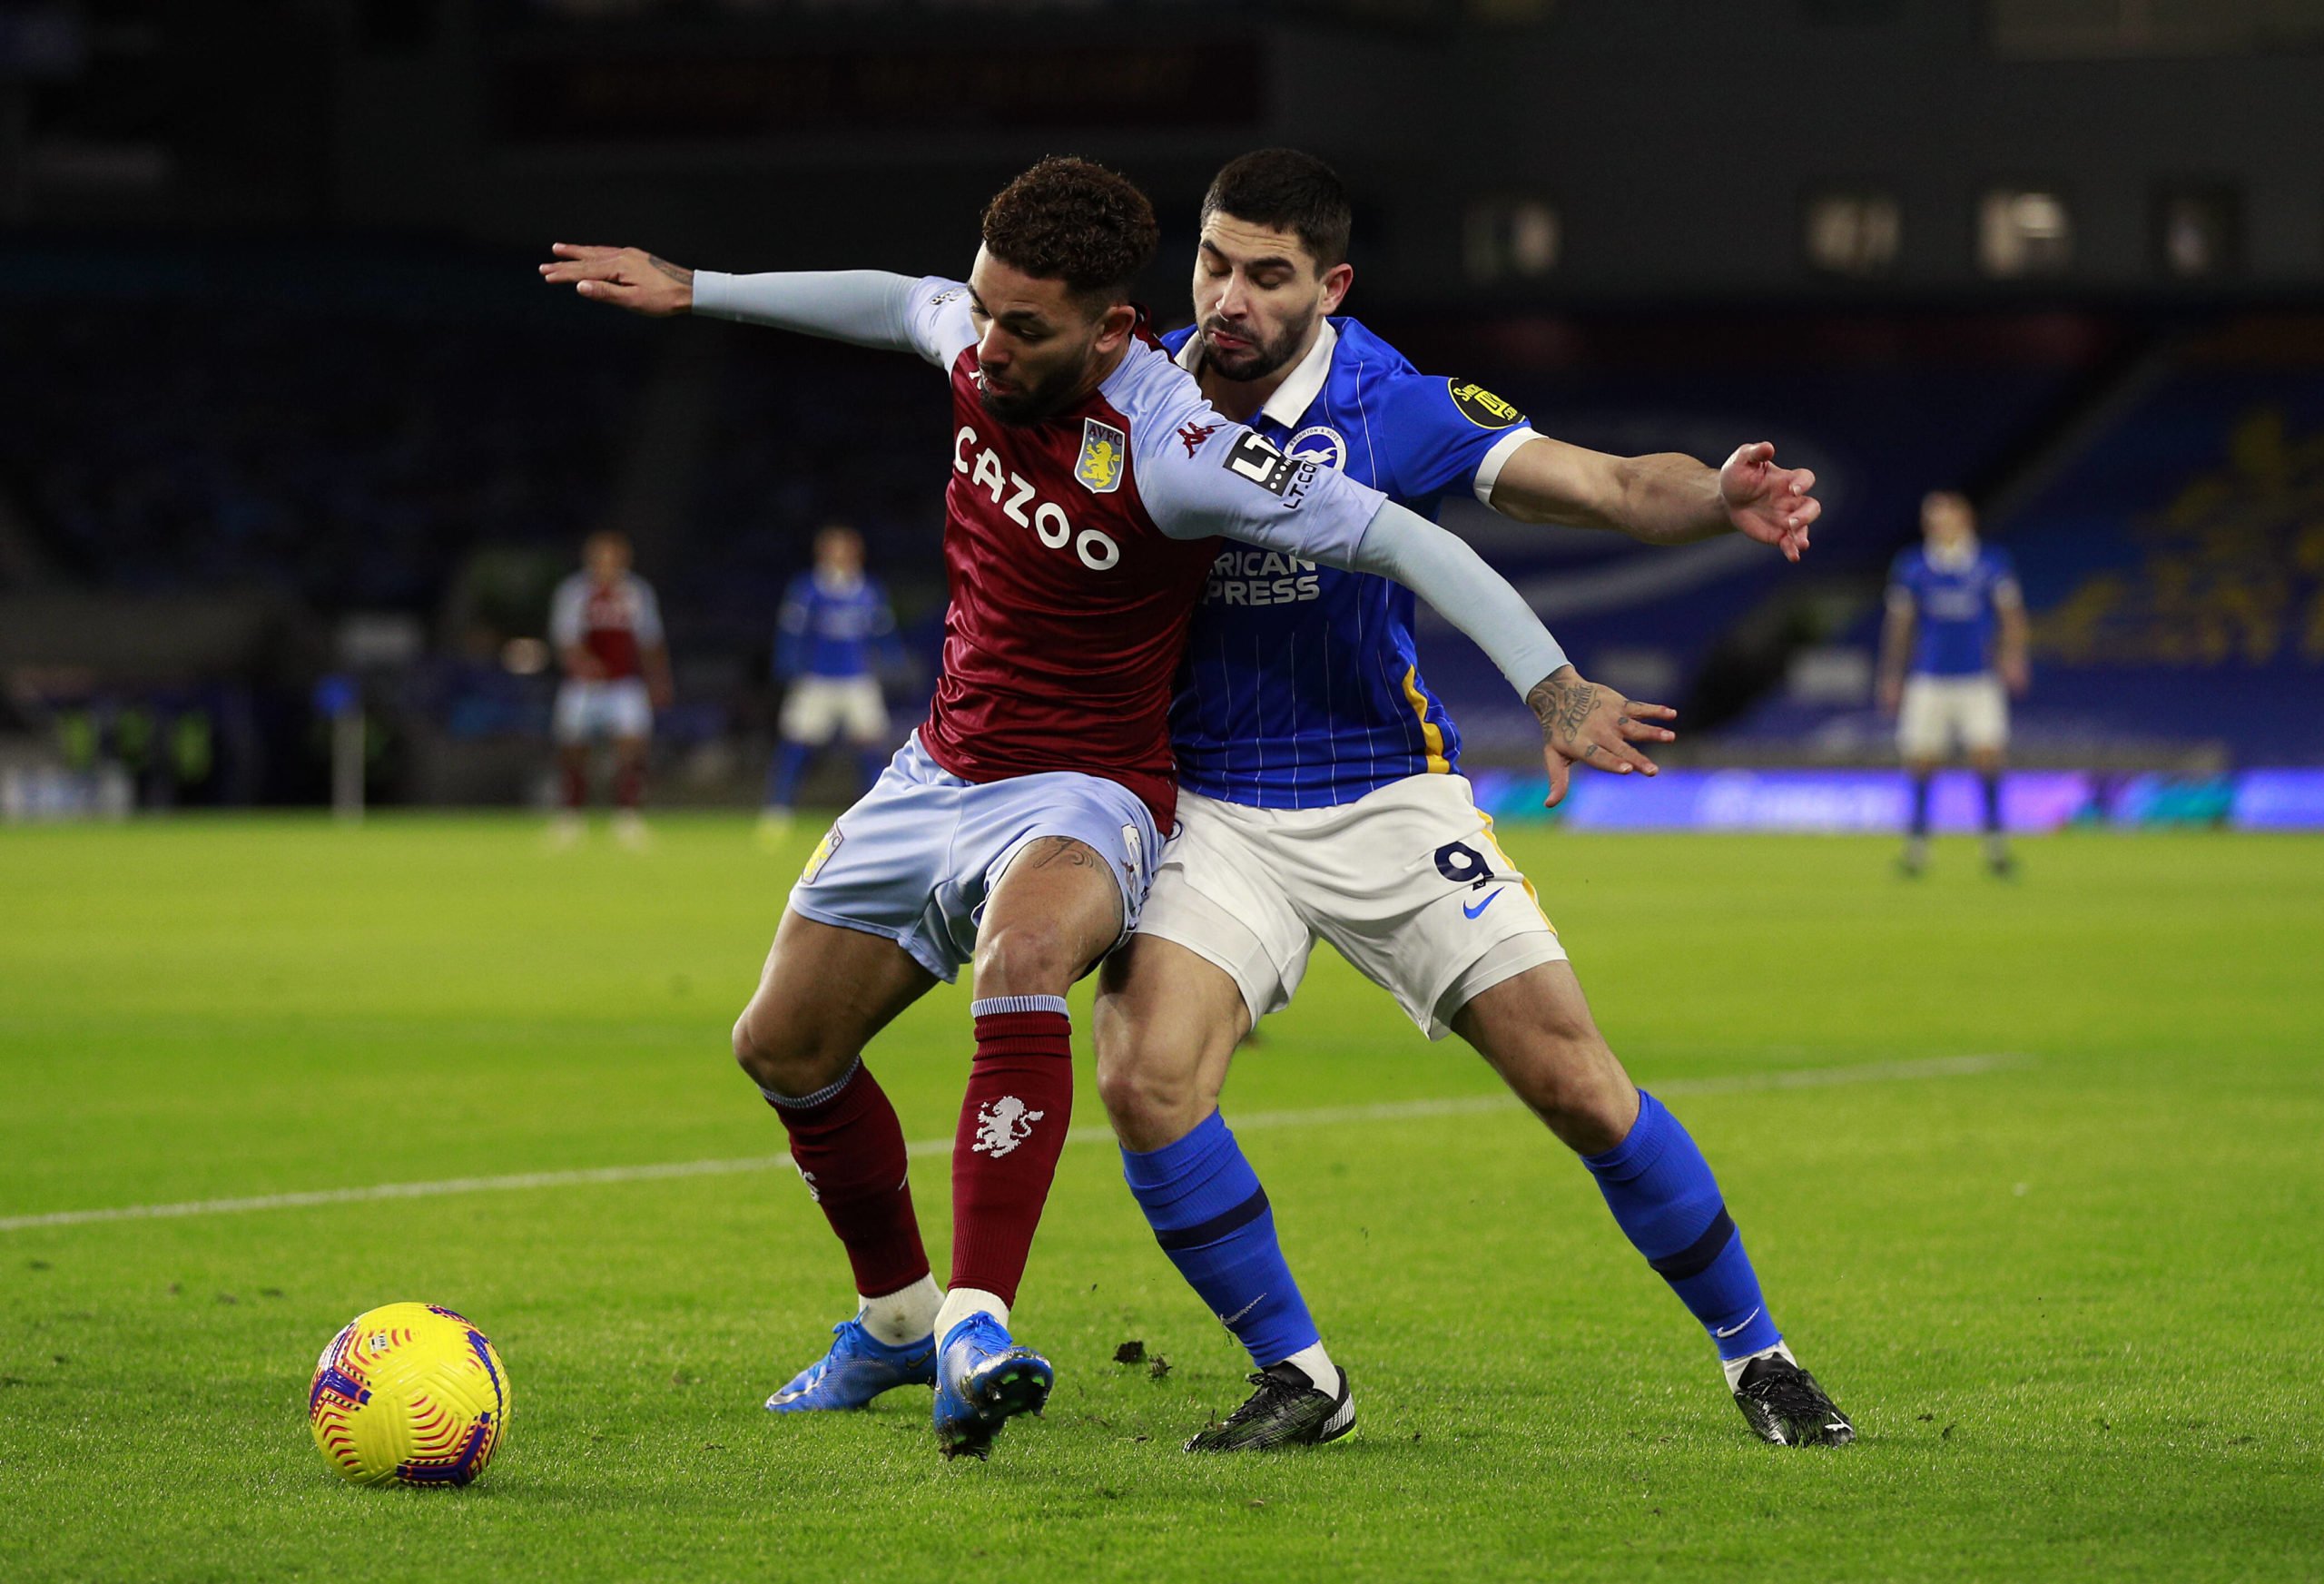 Aston Villa's Douglas Luiz offers update on his future (Douglas Luiz is seen in the photo)